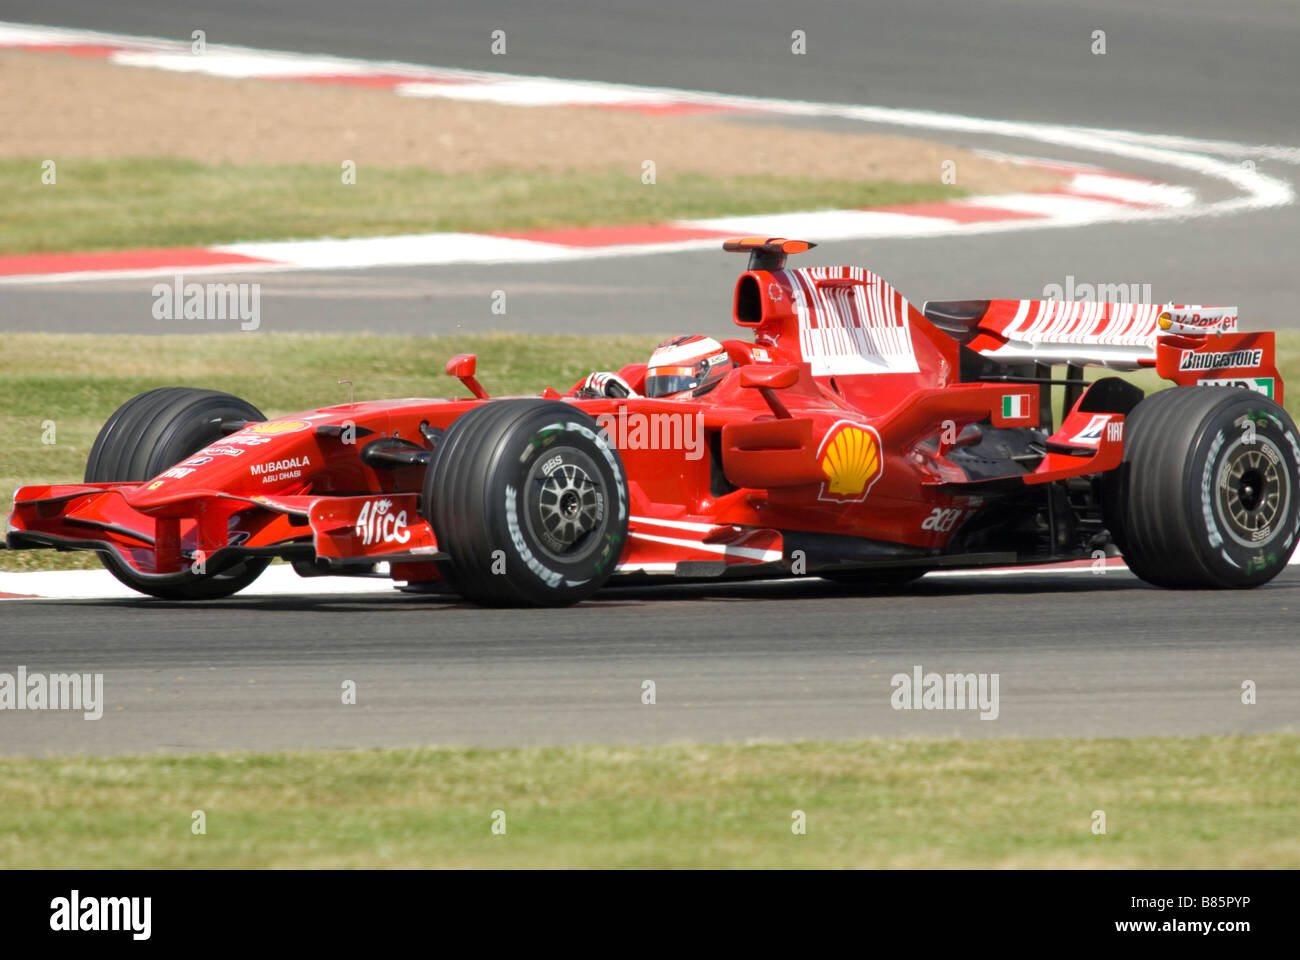 Kimi Räikkönen bei den britischen Grand Prix 2008 Stockfoto